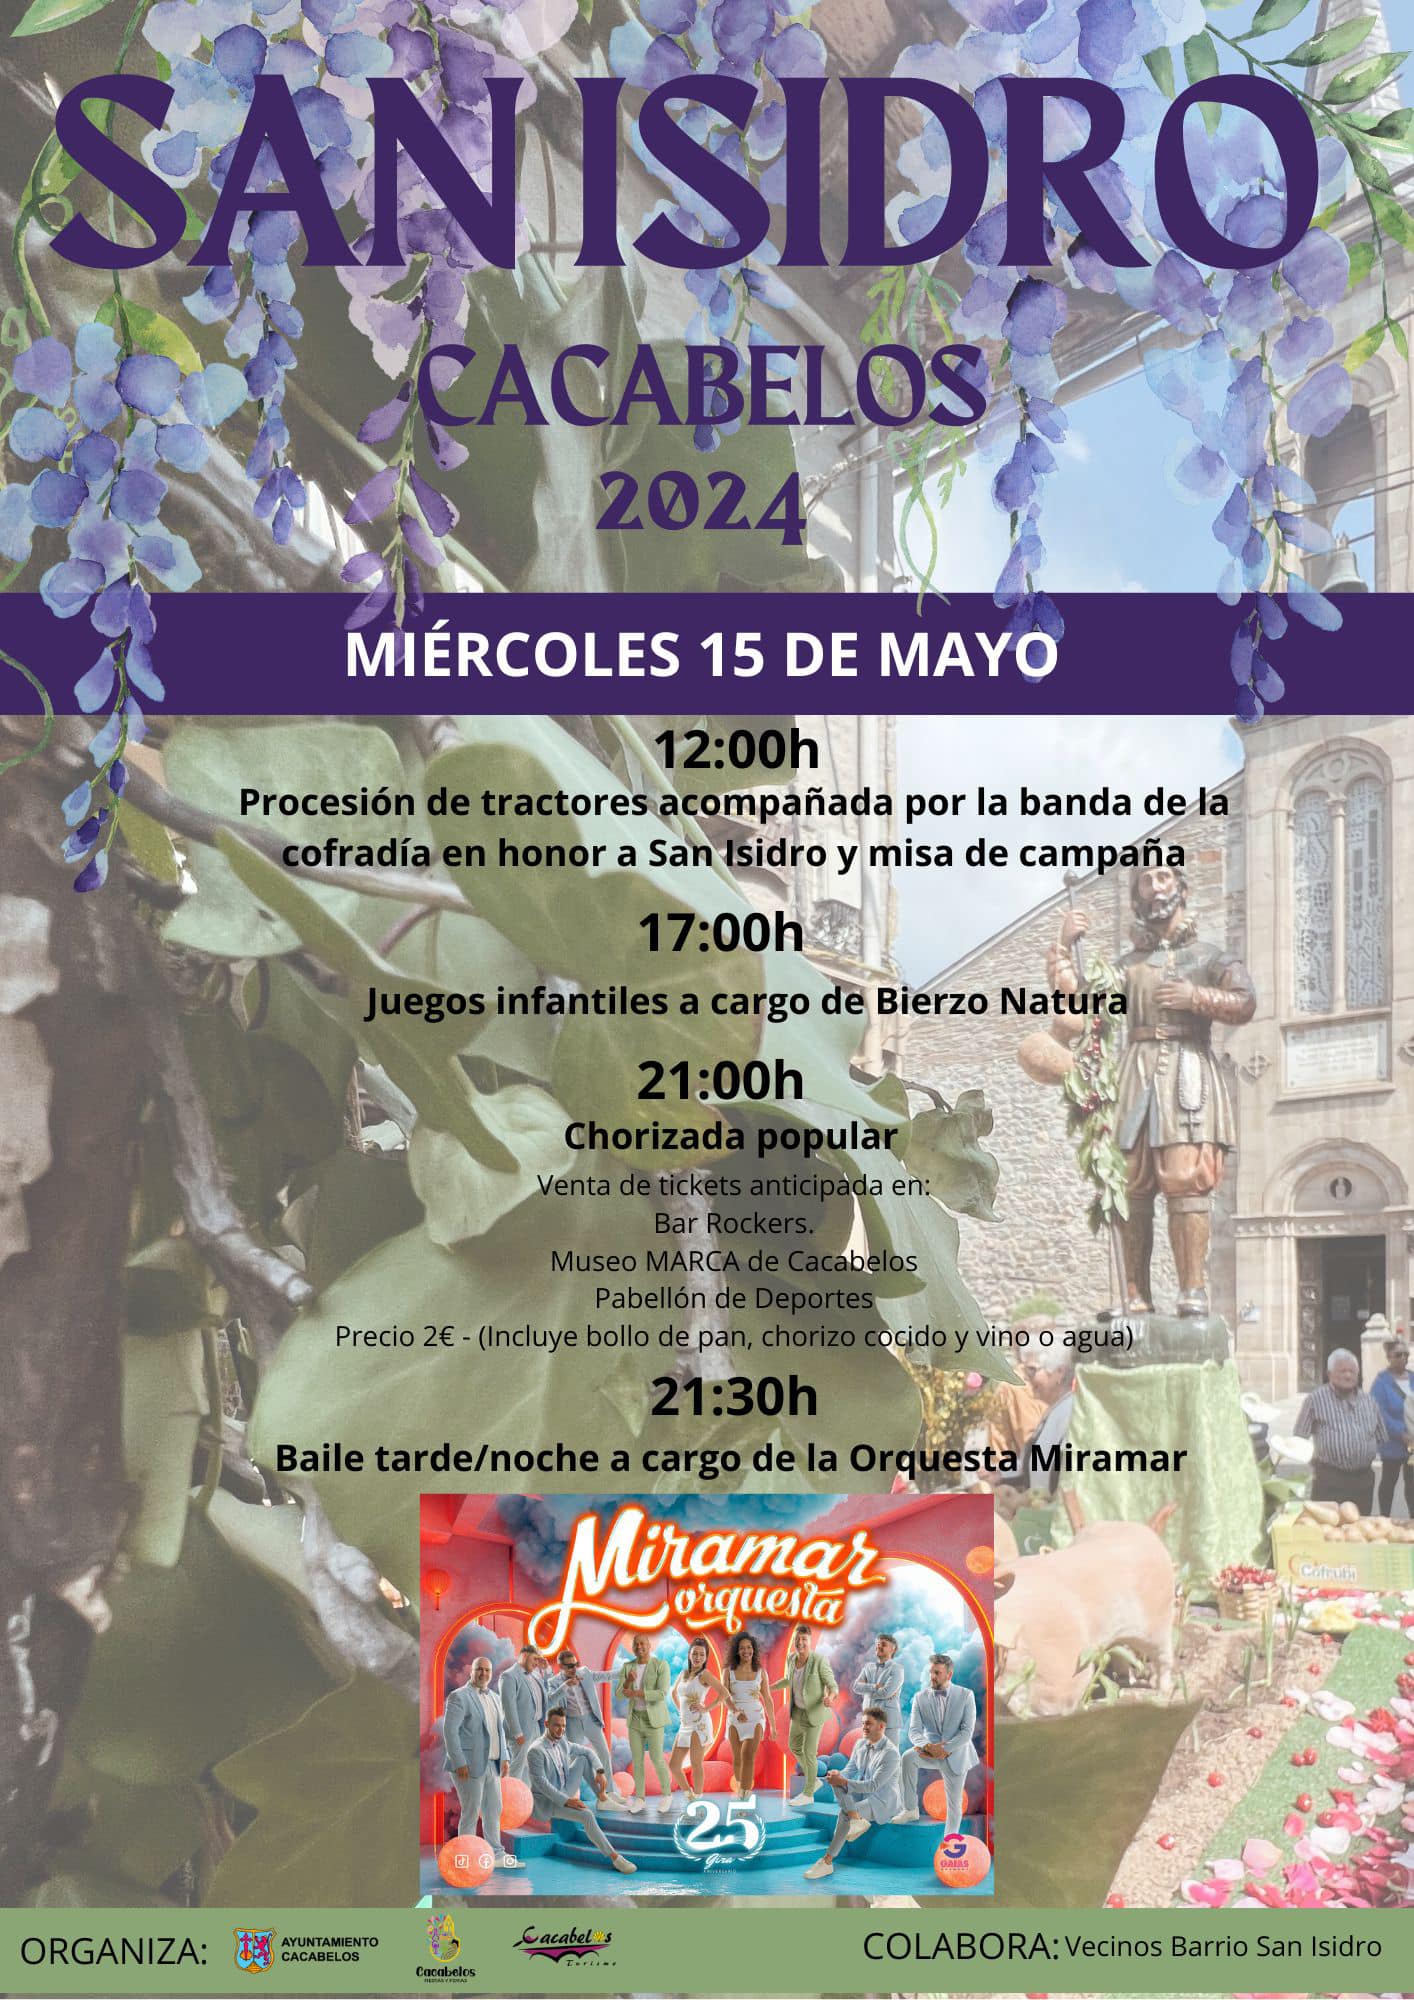 Cacabelos celebrará San Isidro con la tradicional procesión de tractores chorizada y baile 2